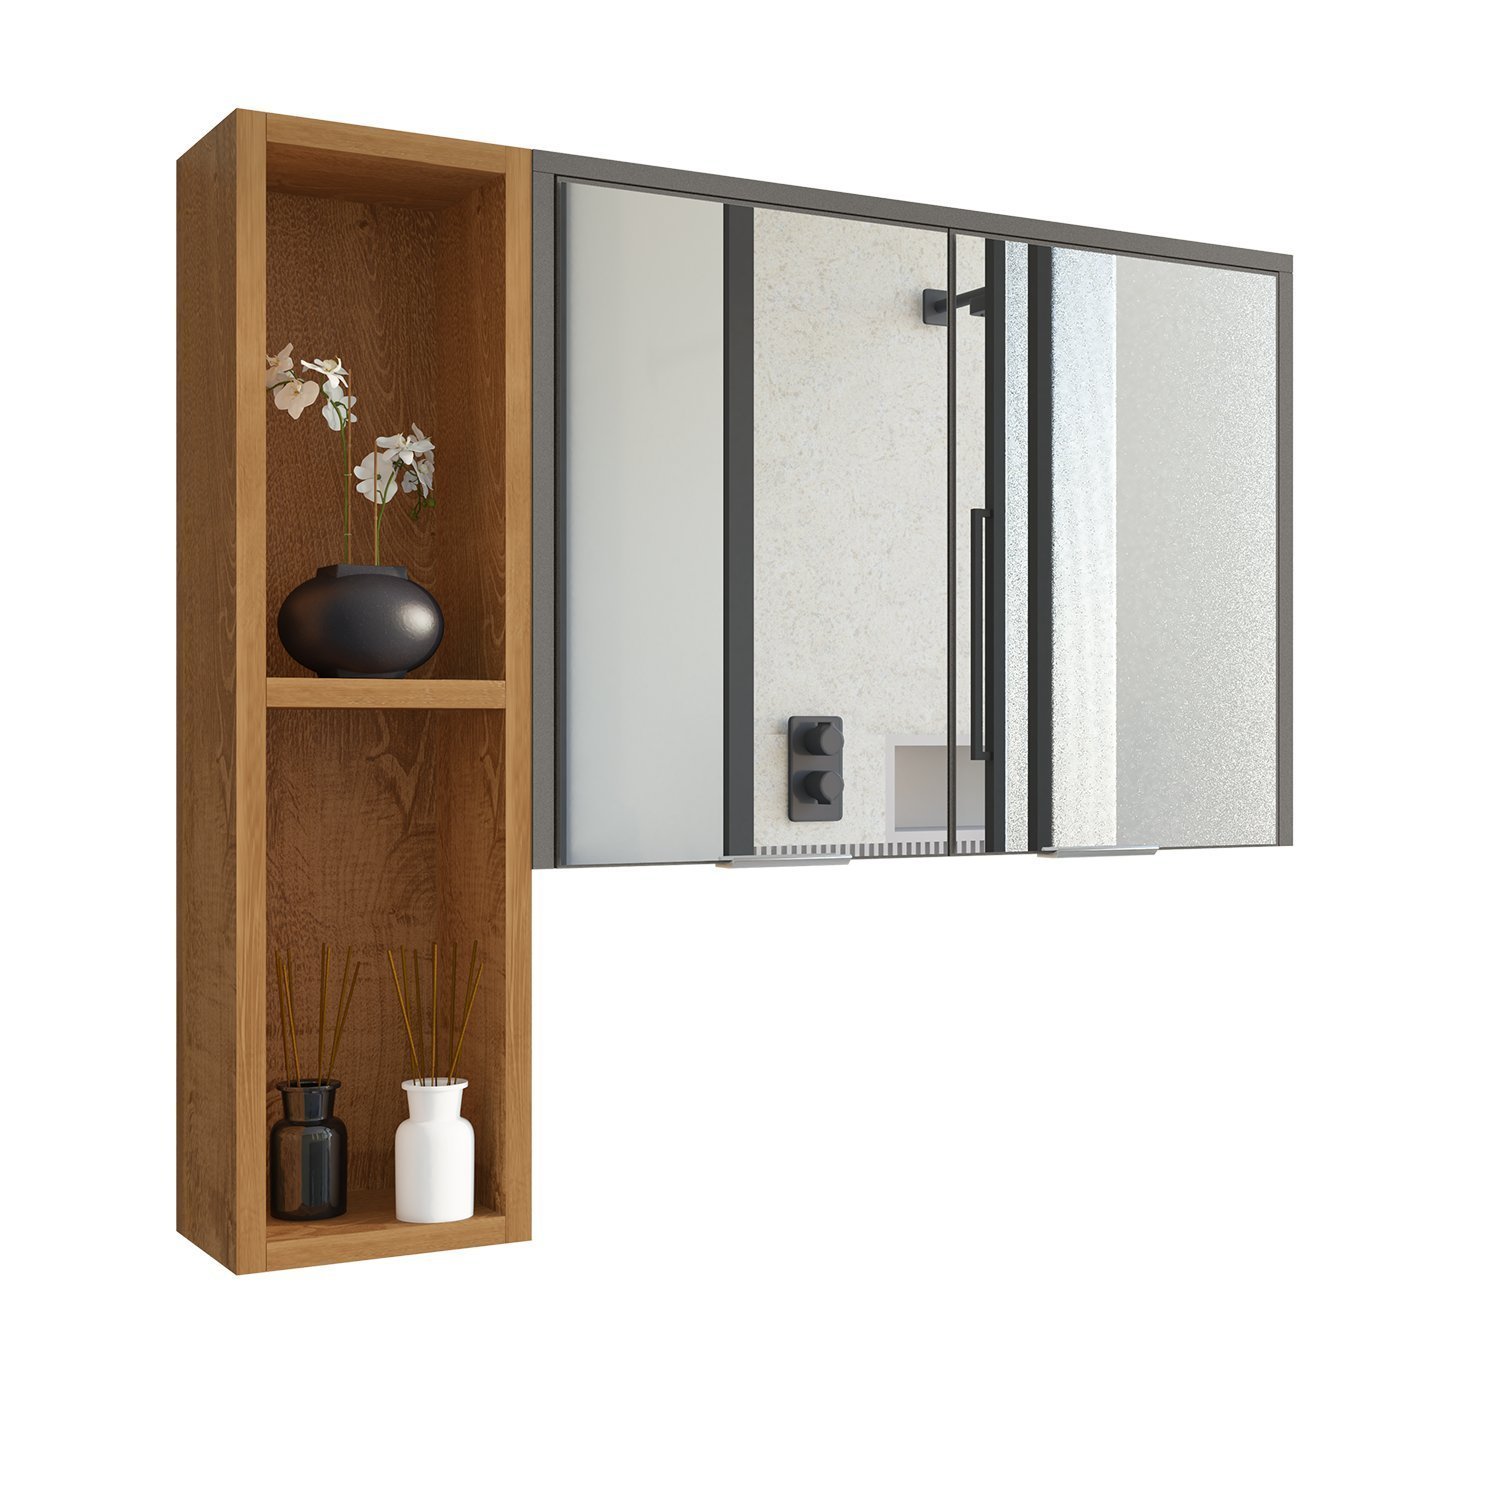 Espelheira Para Banheiro Ibiza 2 Portas Com Espelho Nicho Multifuncional Puxador De Aluminio - 3